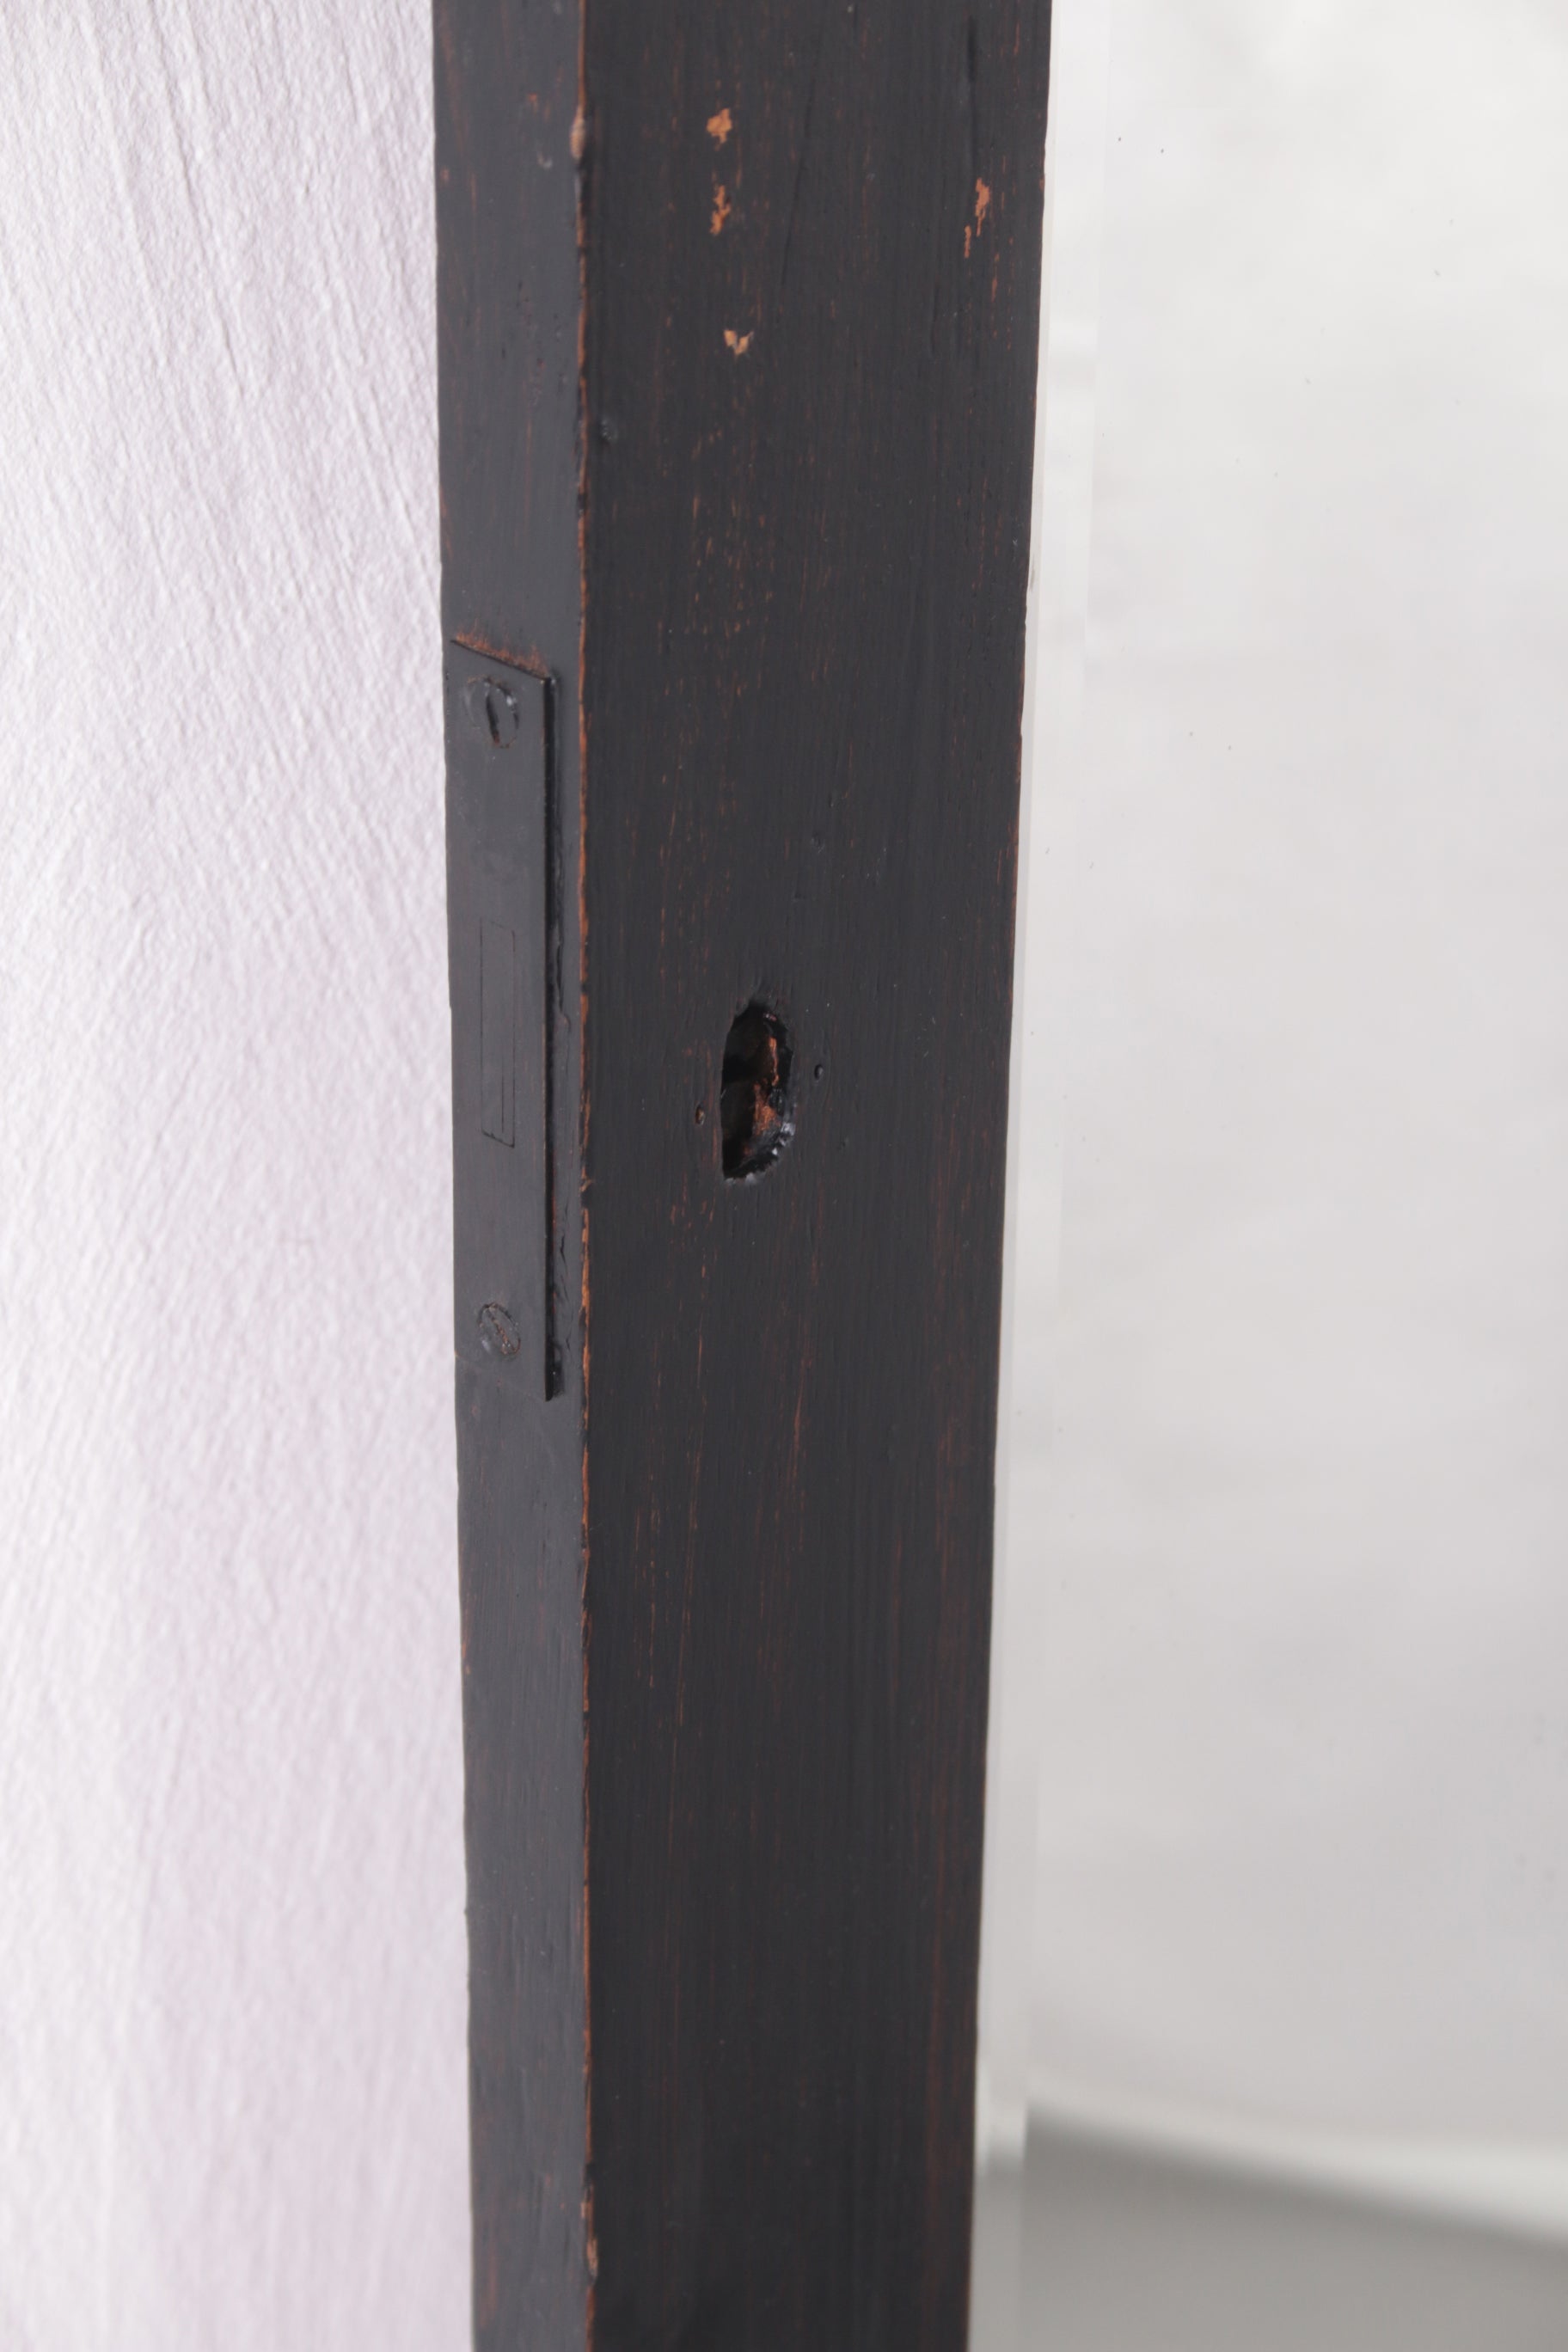 Grote Zwarte Passpiegel met mooie houten lijst detail rand